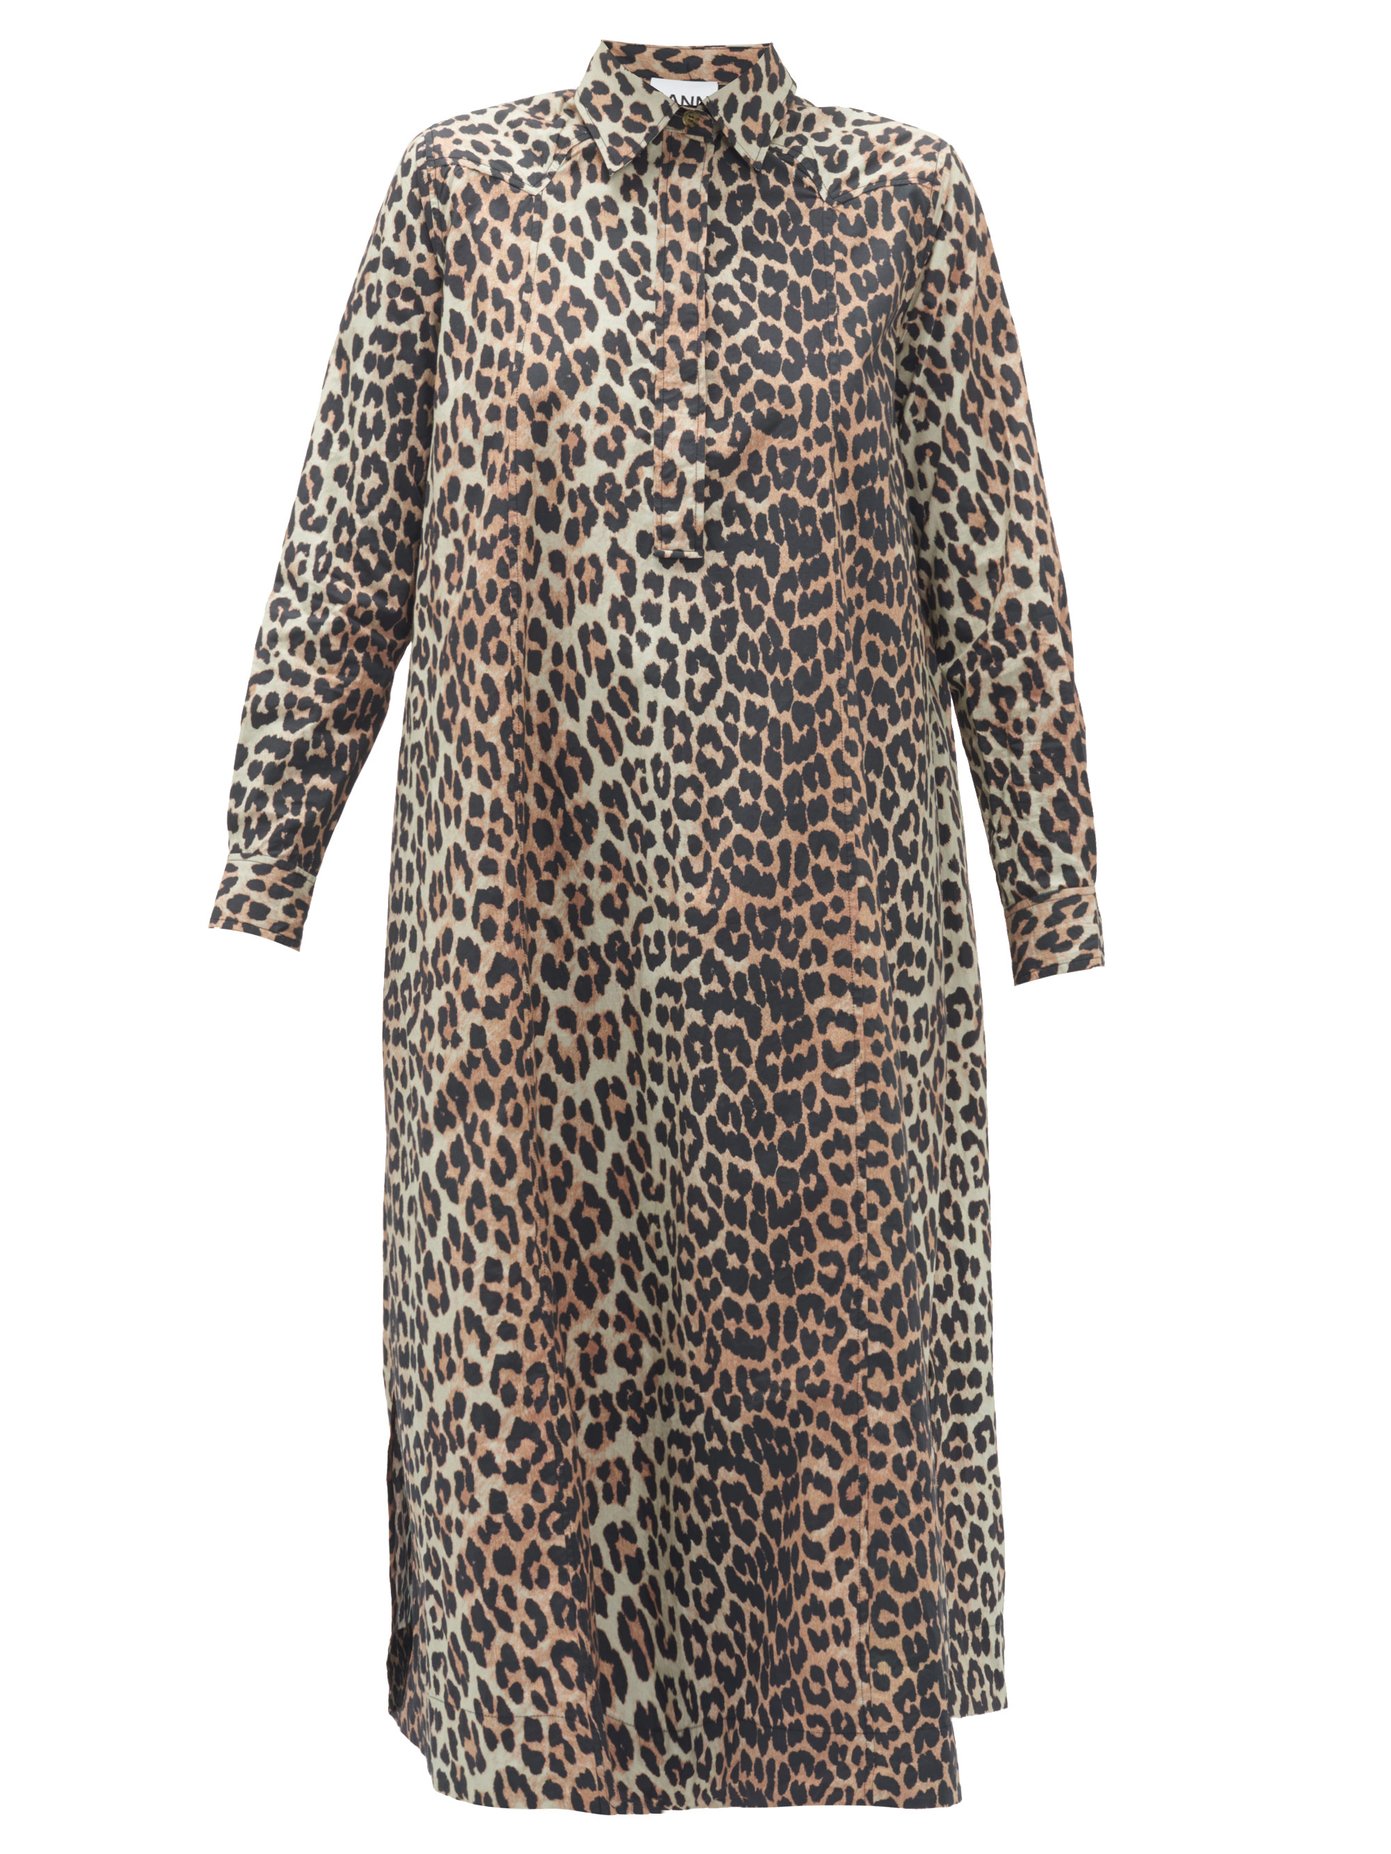 long leopard shirt dress